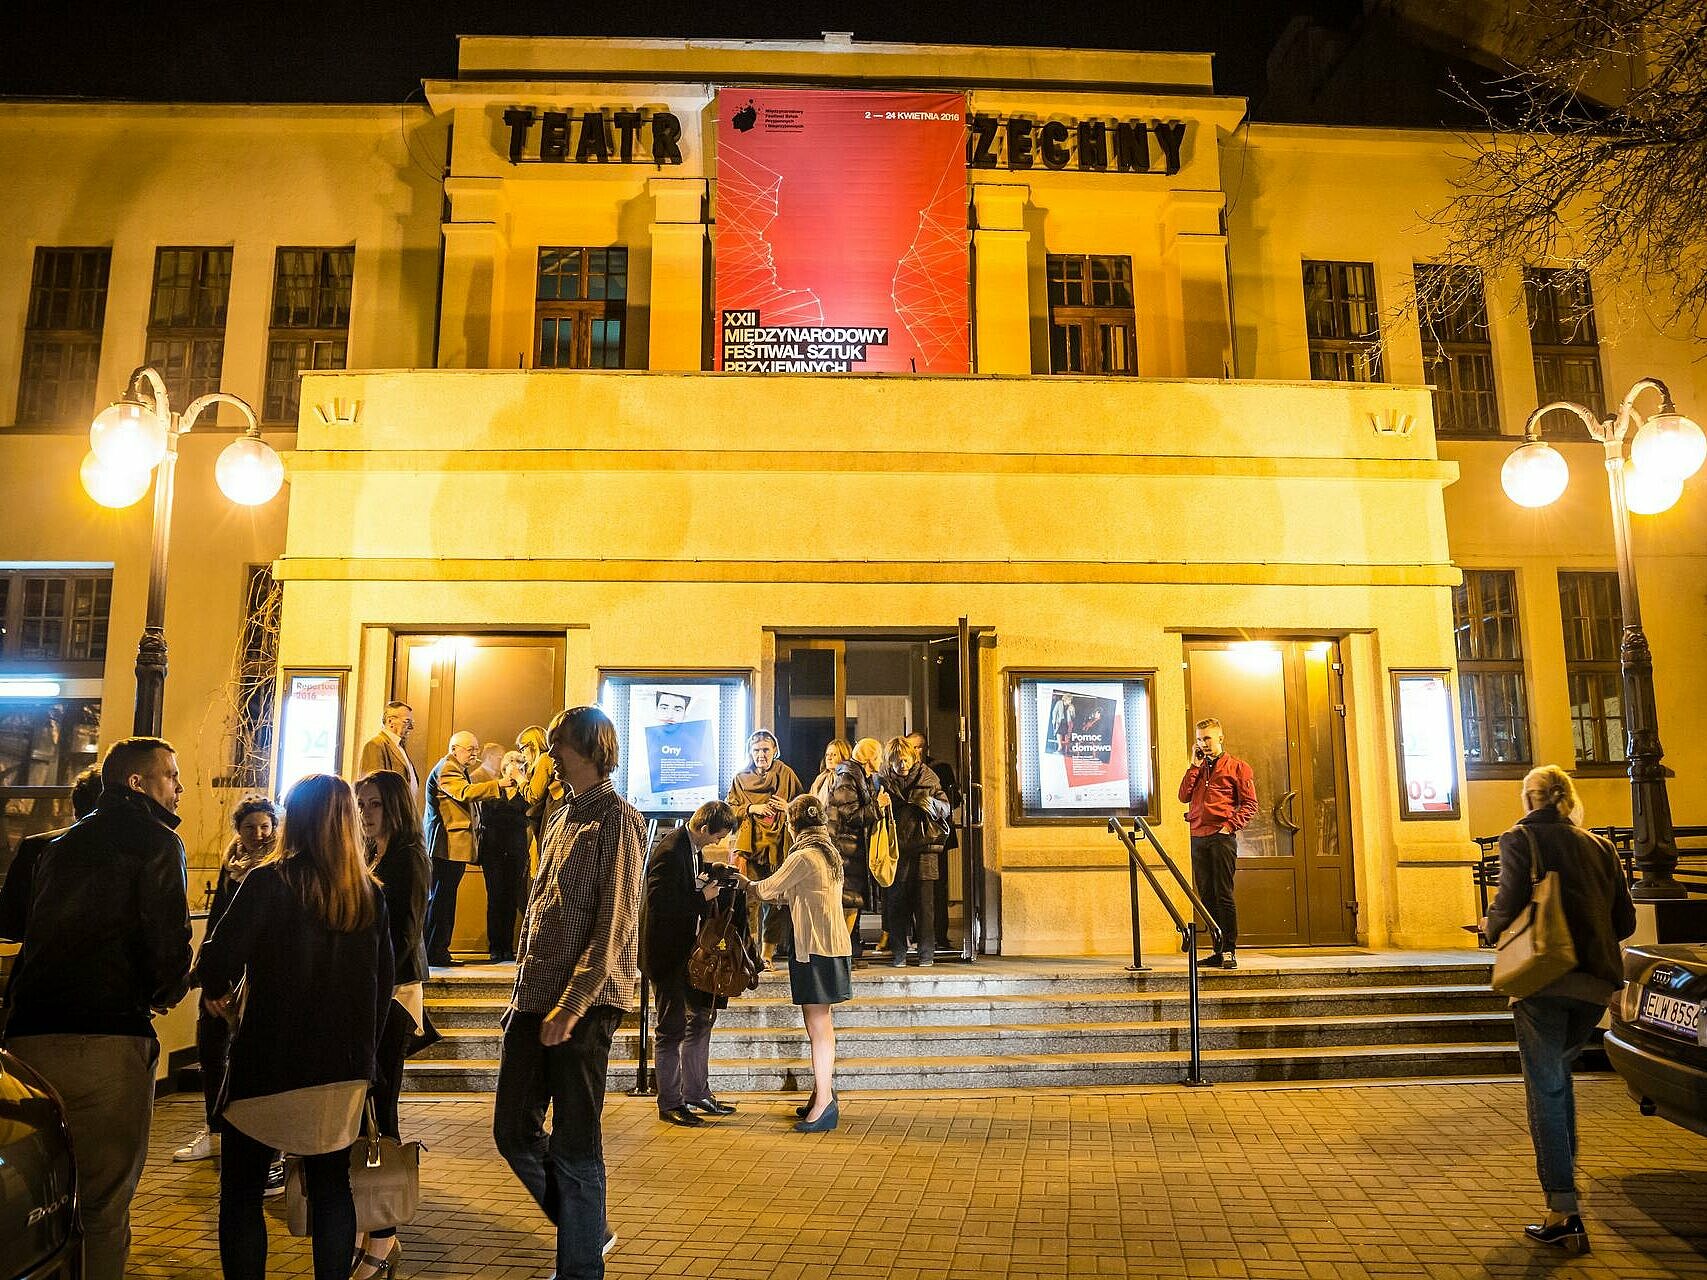 Teatr Powszechny 